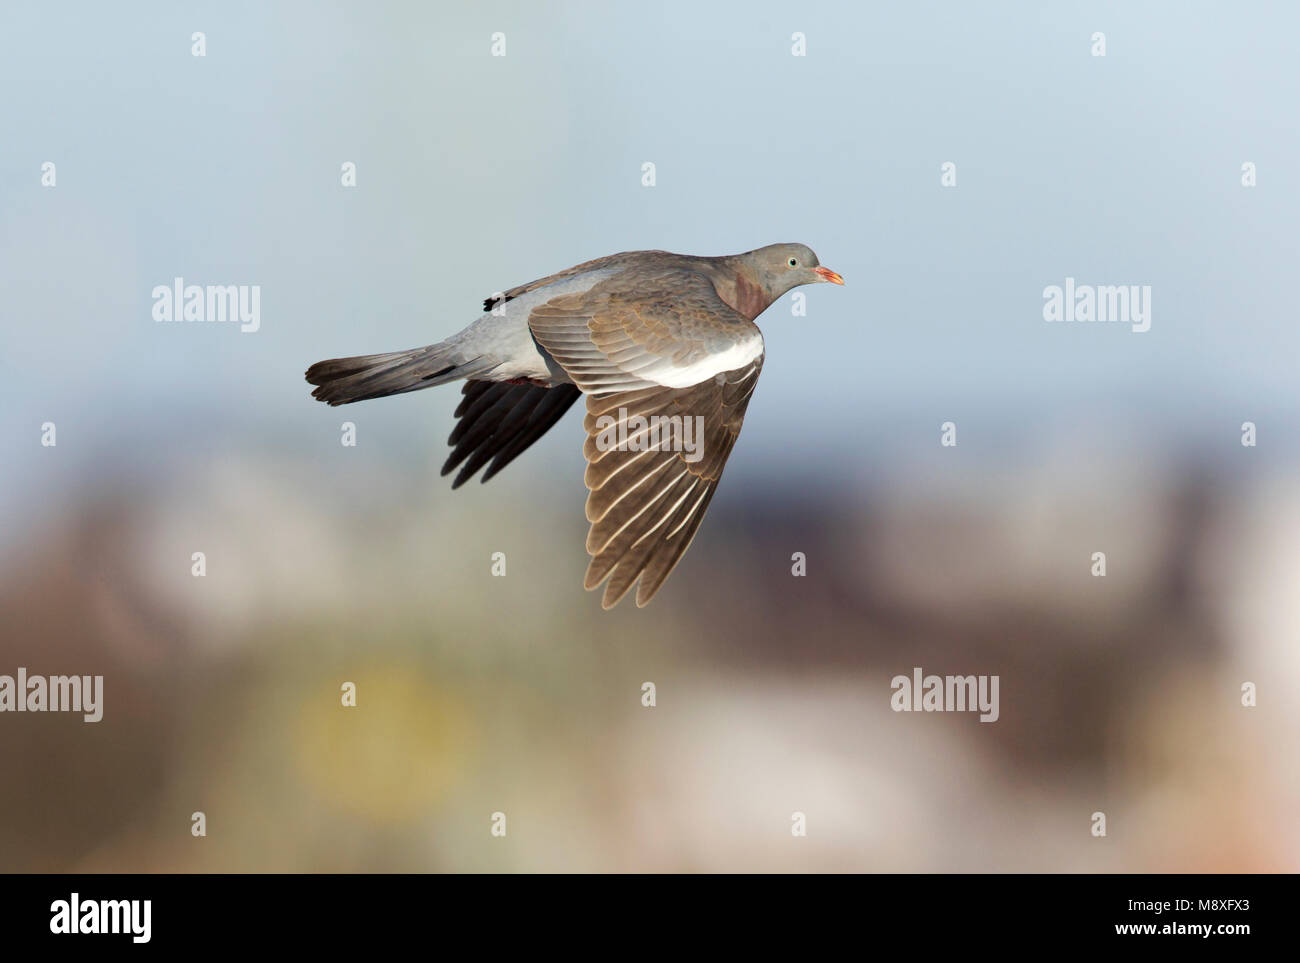 Vliegende trekkende Houtduif ; Flying Pigeon bois commun en migration Banque D'Images